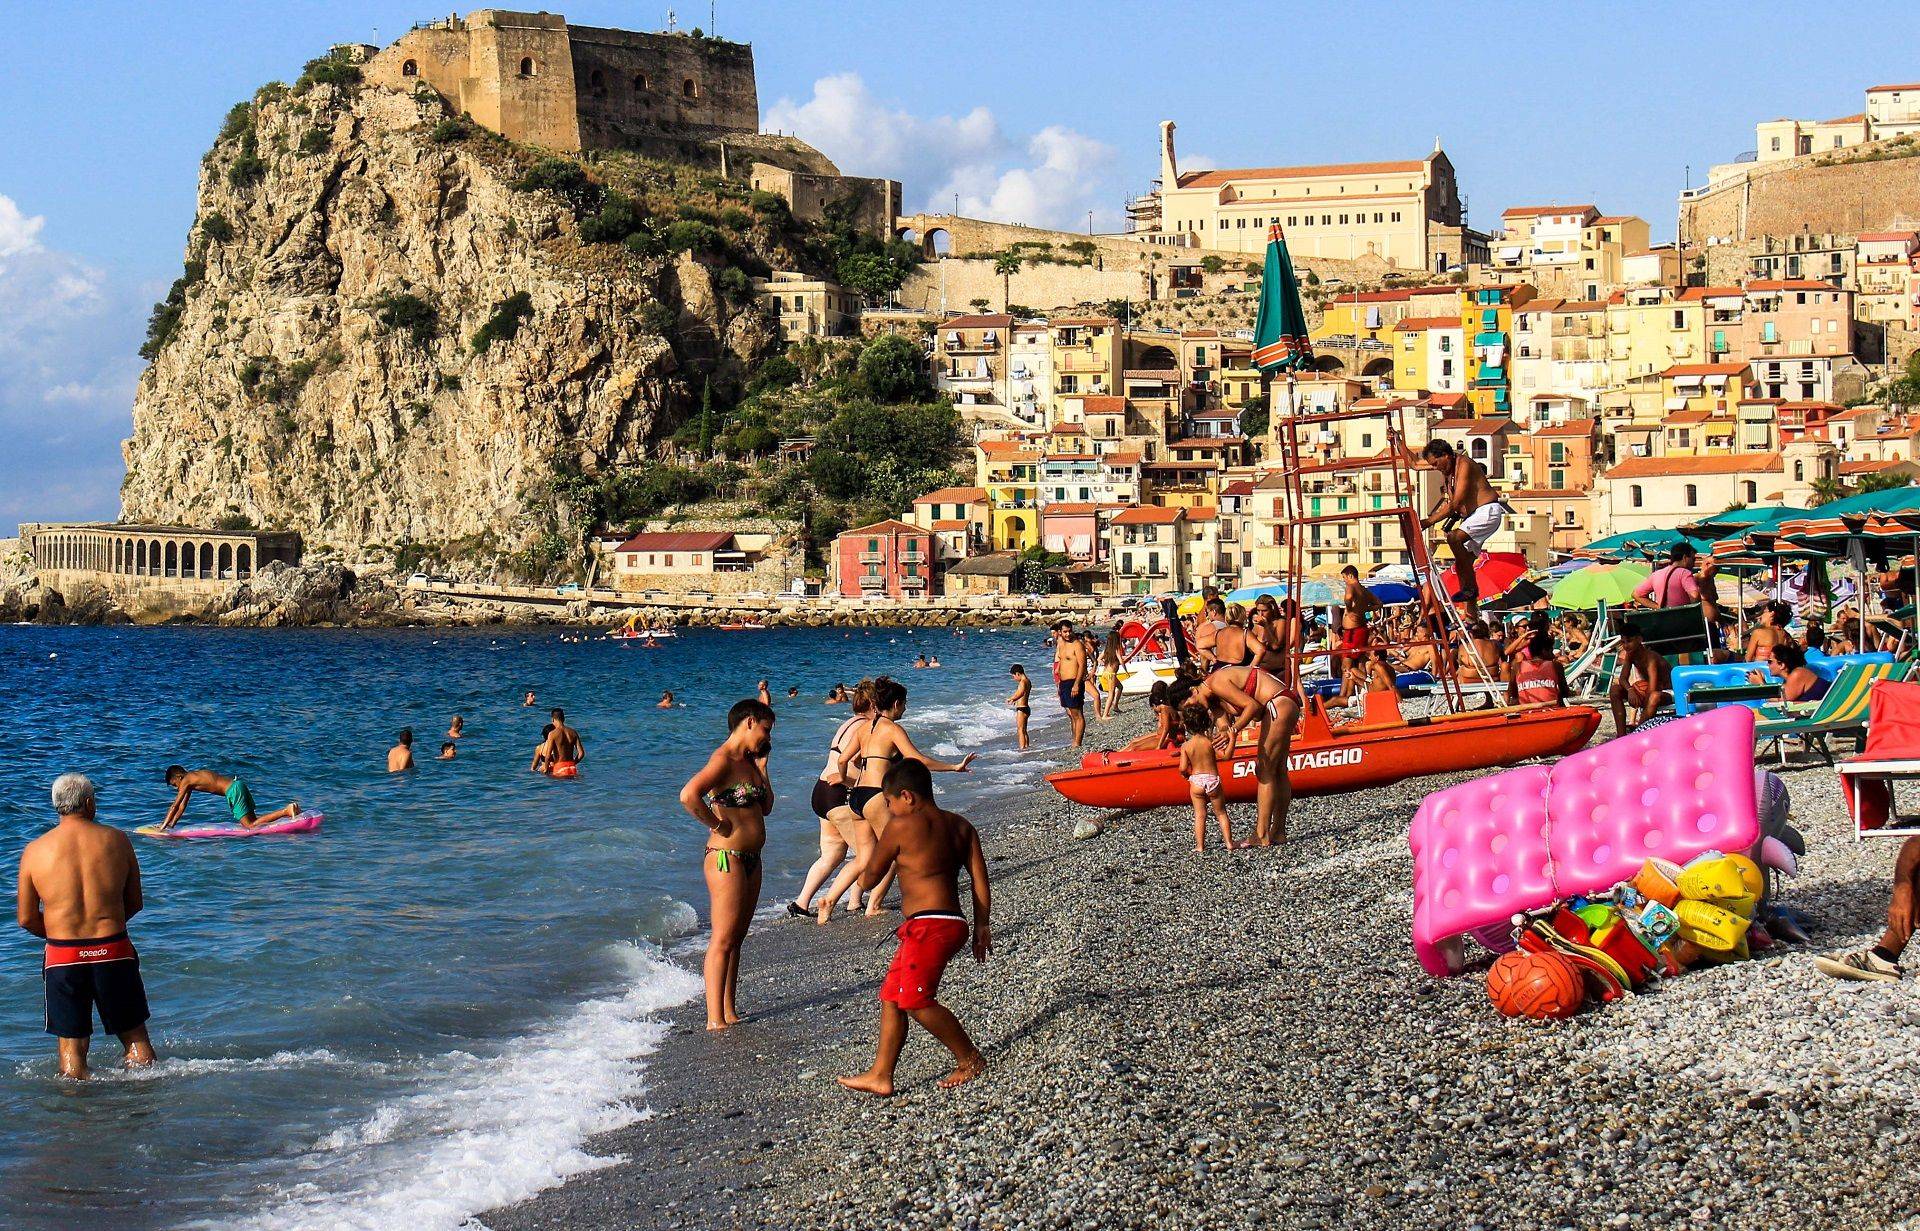 Италия отдых на море лучшие места, курорты италии на море с пляжами отзывы туристов